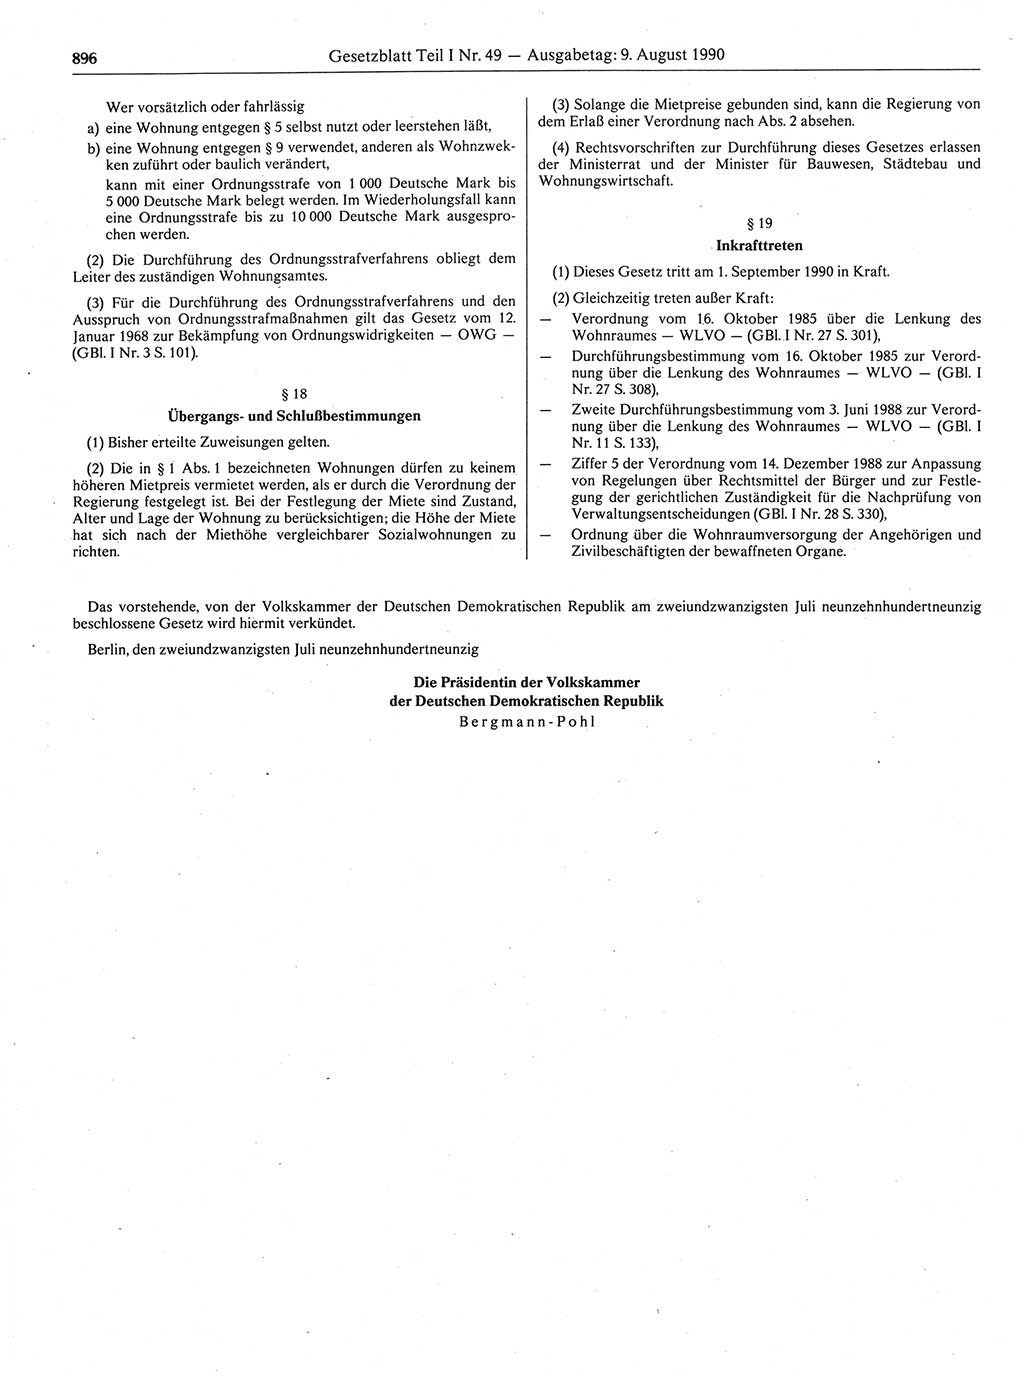 Gesetzblatt (GBl.) der Deutschen Demokratischen Republik (DDR) Teil Ⅰ 1990, Seite 896 (GBl. DDR Ⅰ 1990, S. 896)